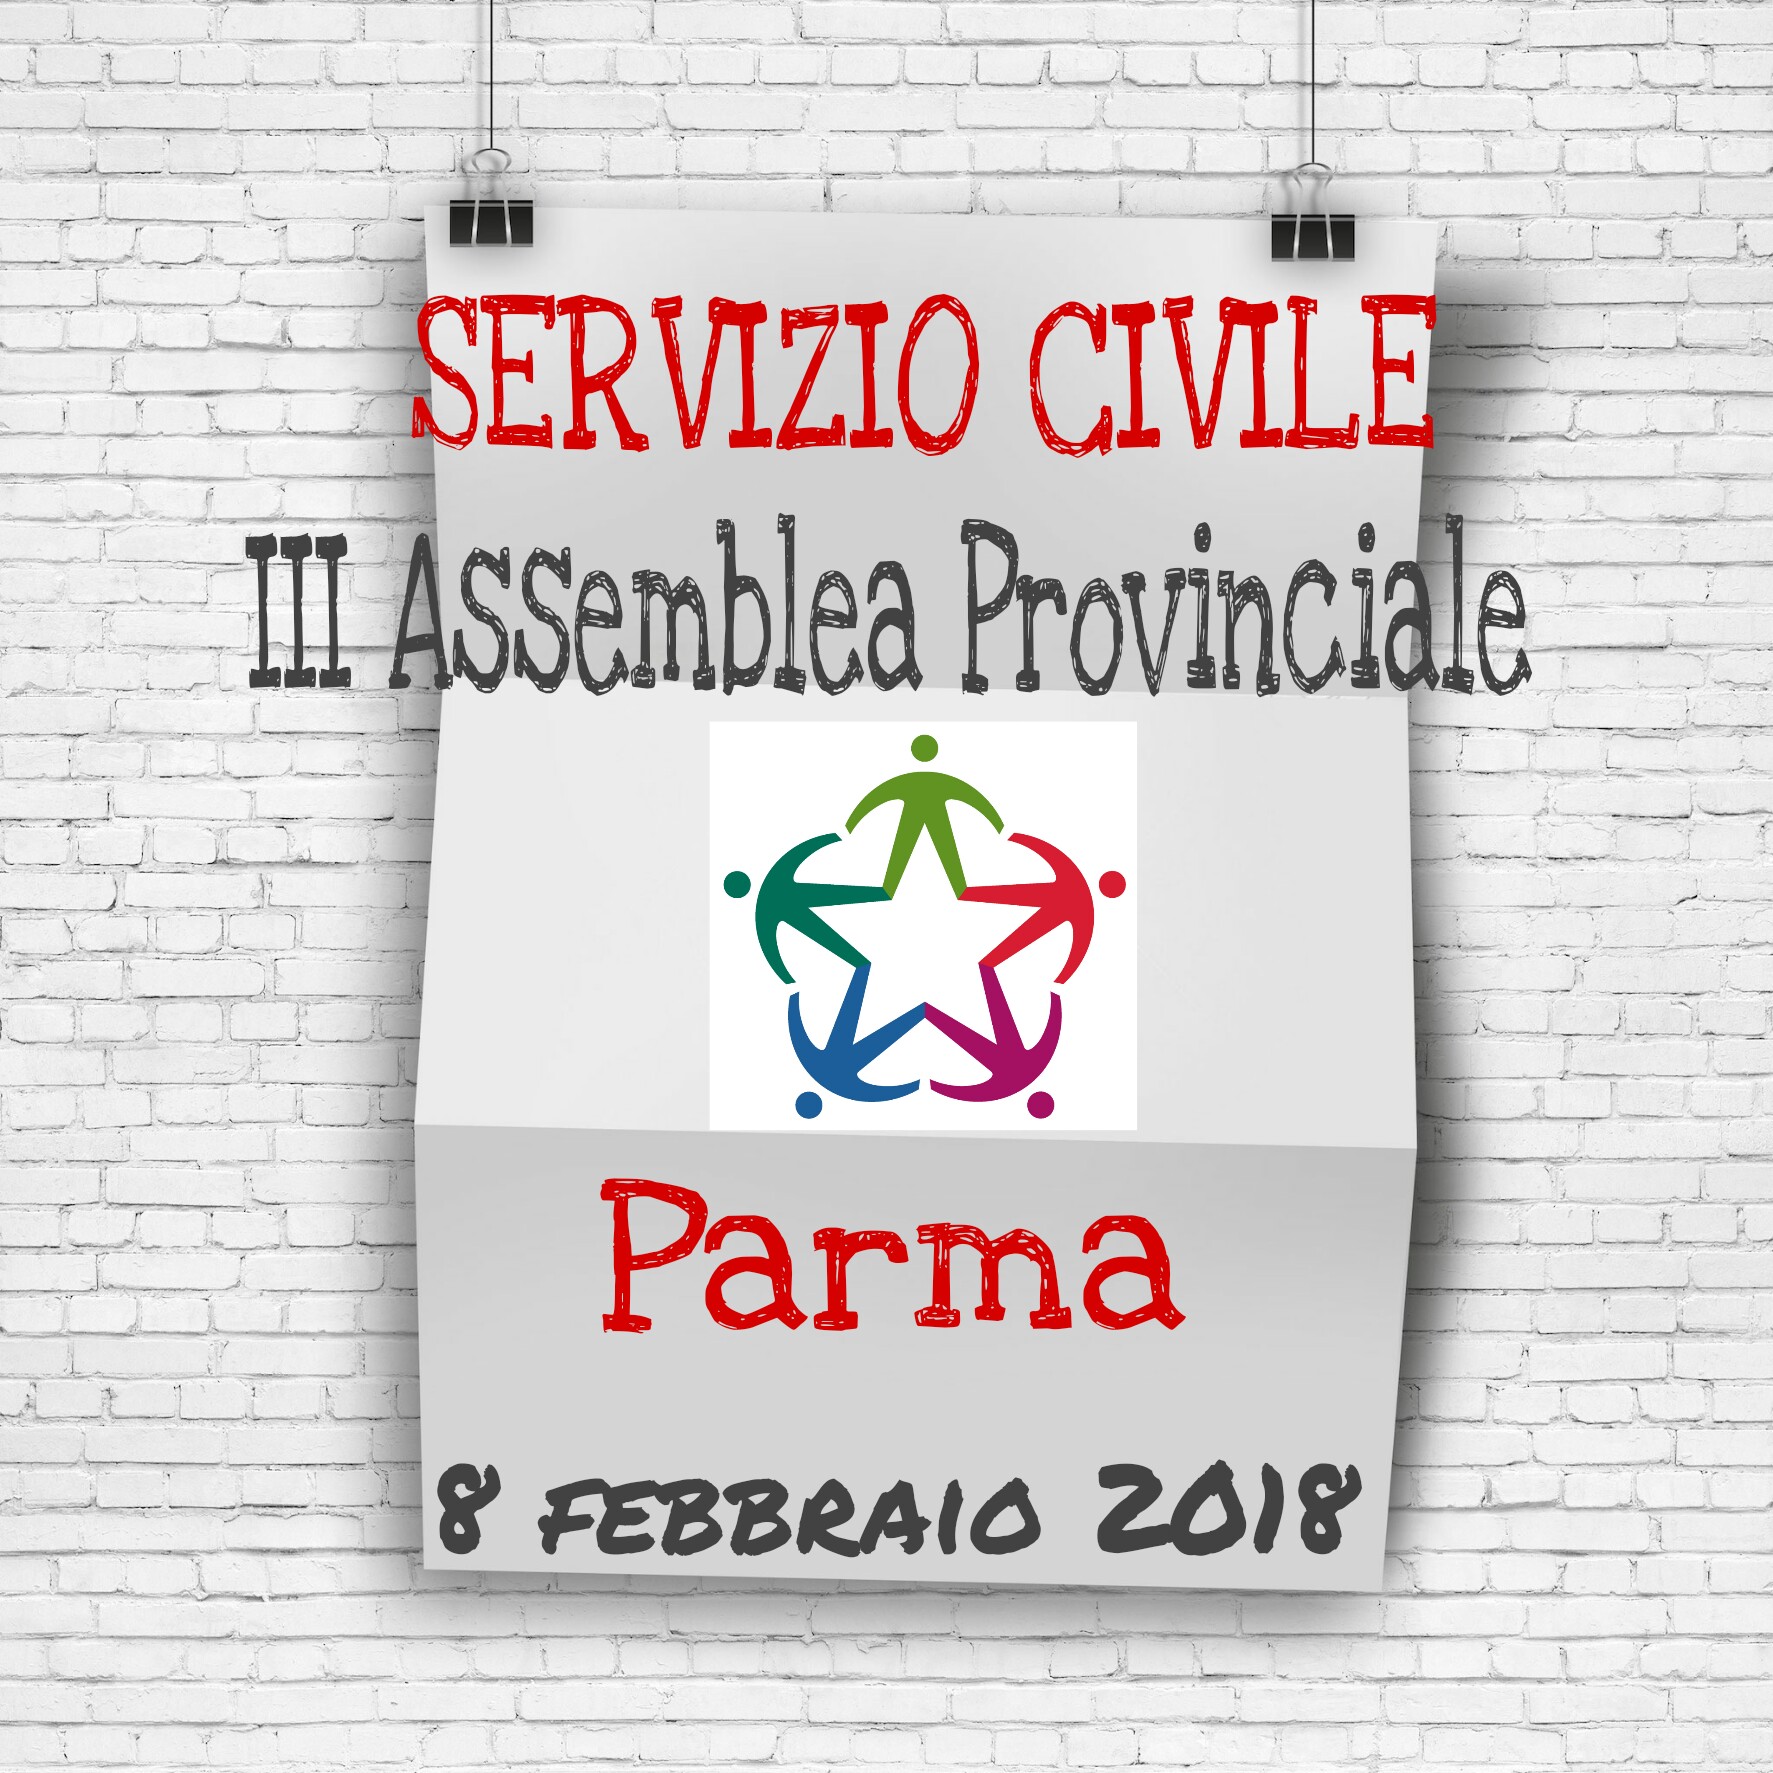 http://www.serviziocivileparma.it/web/iii-assemblea-provinciale-del-servizio-civile-a-parma/